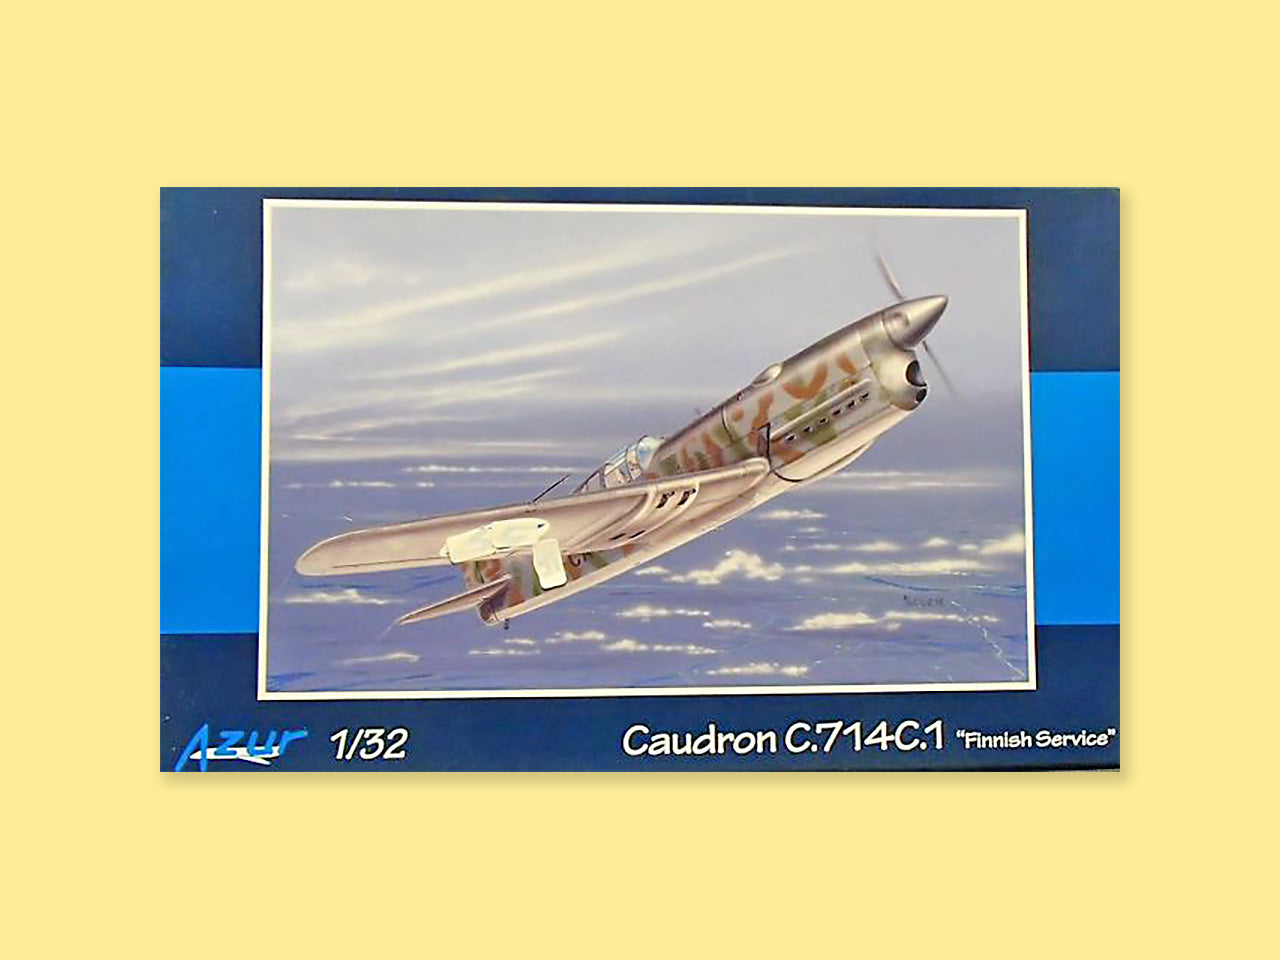 Caudron C. 714 C.1